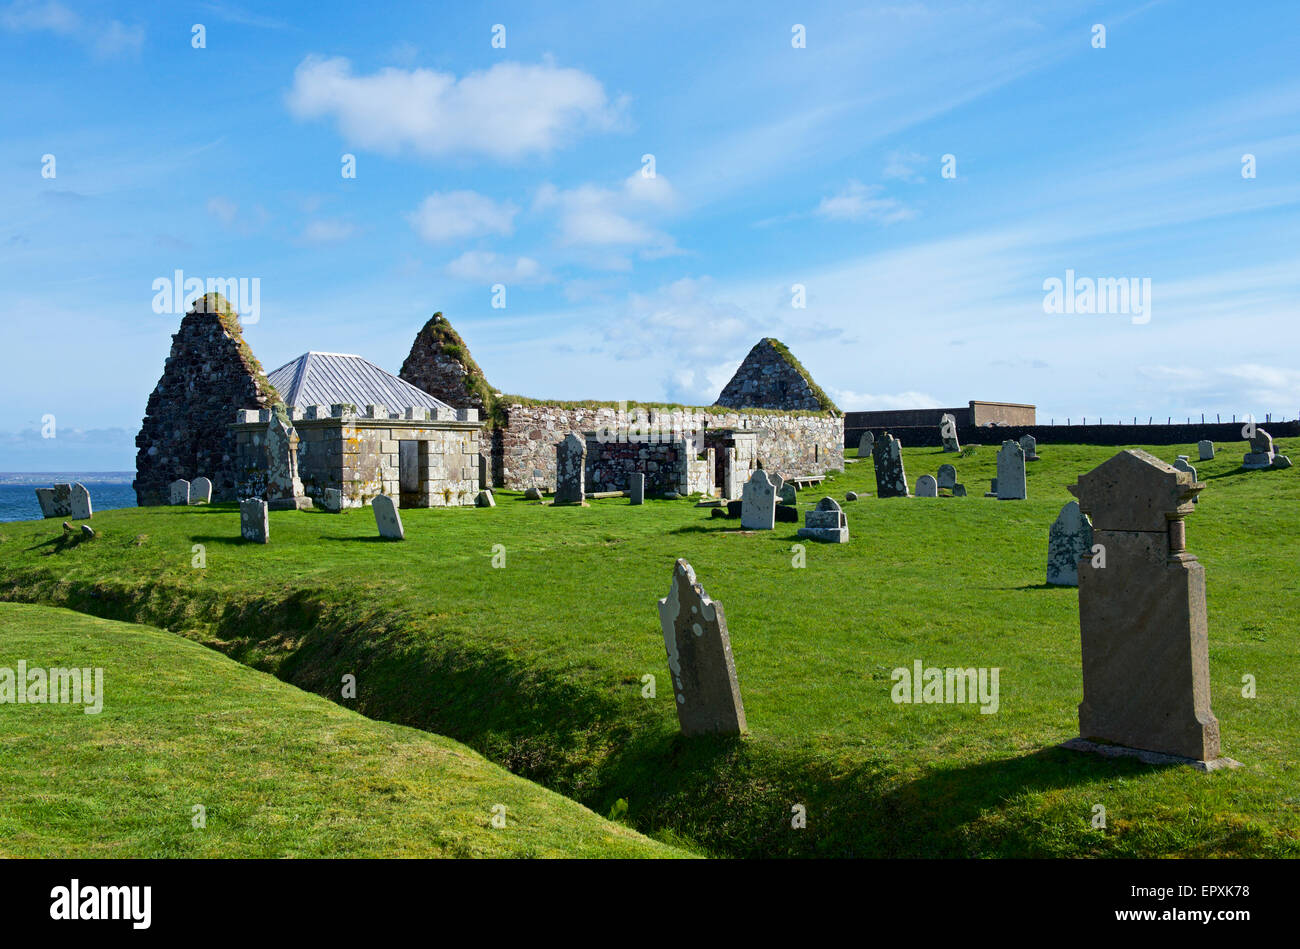 St Columba's Church, Ui, Isle of Lewis, Outer Hebrides, Scotland UK Stock Photo